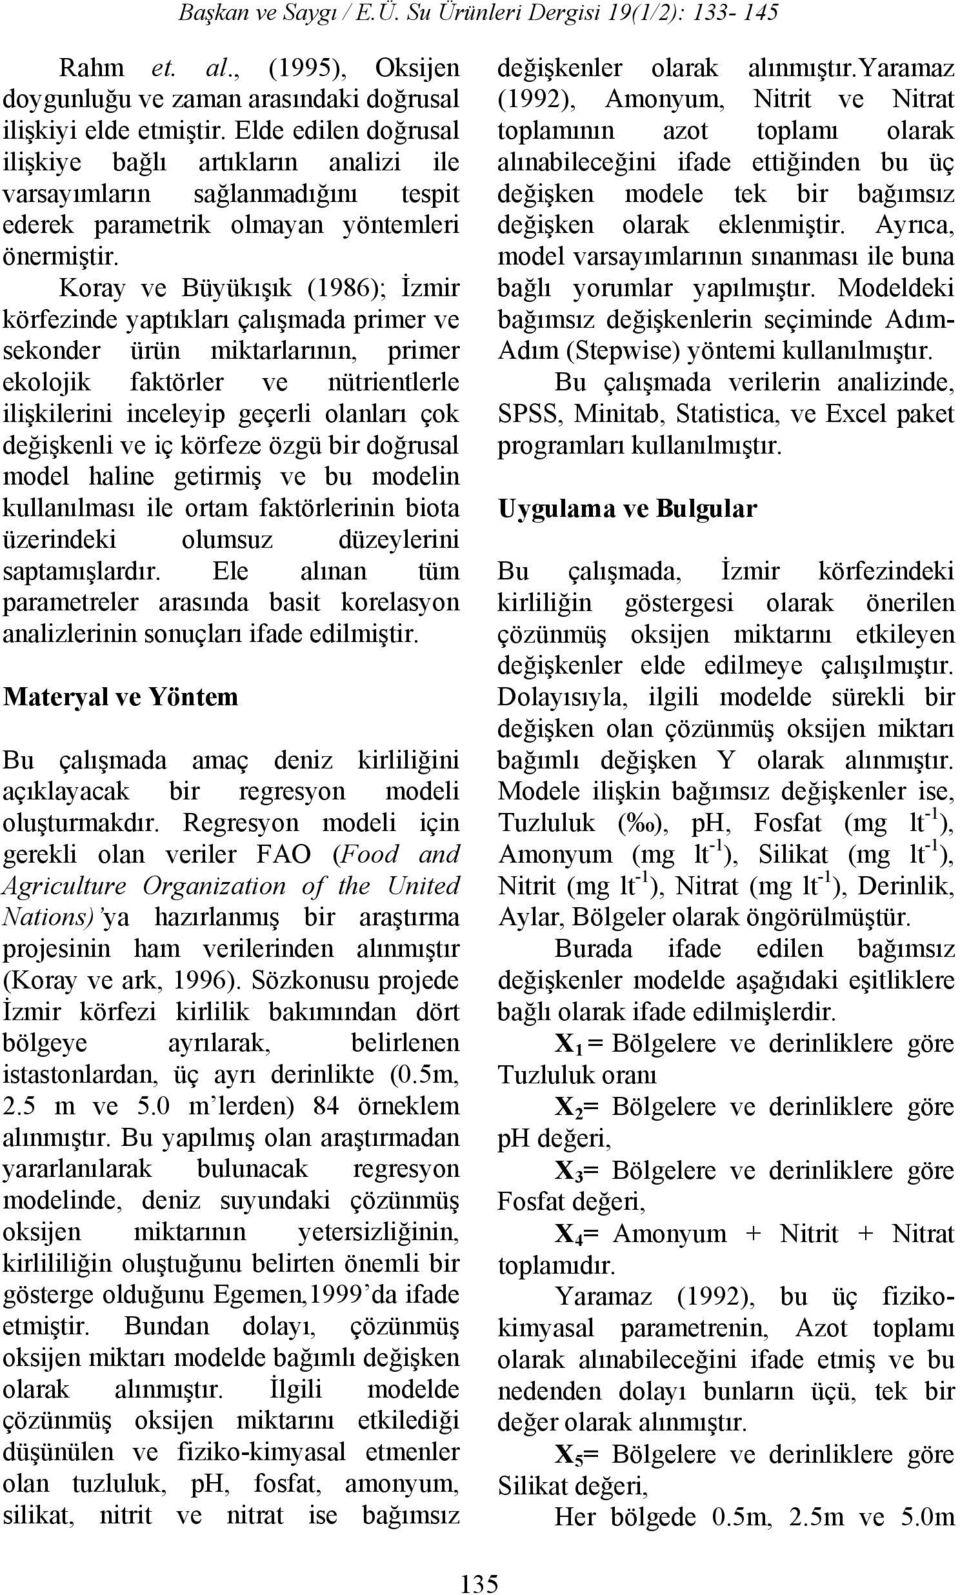 Koray ve Büyükışık (1986); İzmir körfezinde yaptıkları çalışmada pmer ve sekonder ürün miktarlarının, pmer ekolojik faktörler ve nütentlerle ilişkileni inceleyip geçerli olanları çok değişkenli ve iç